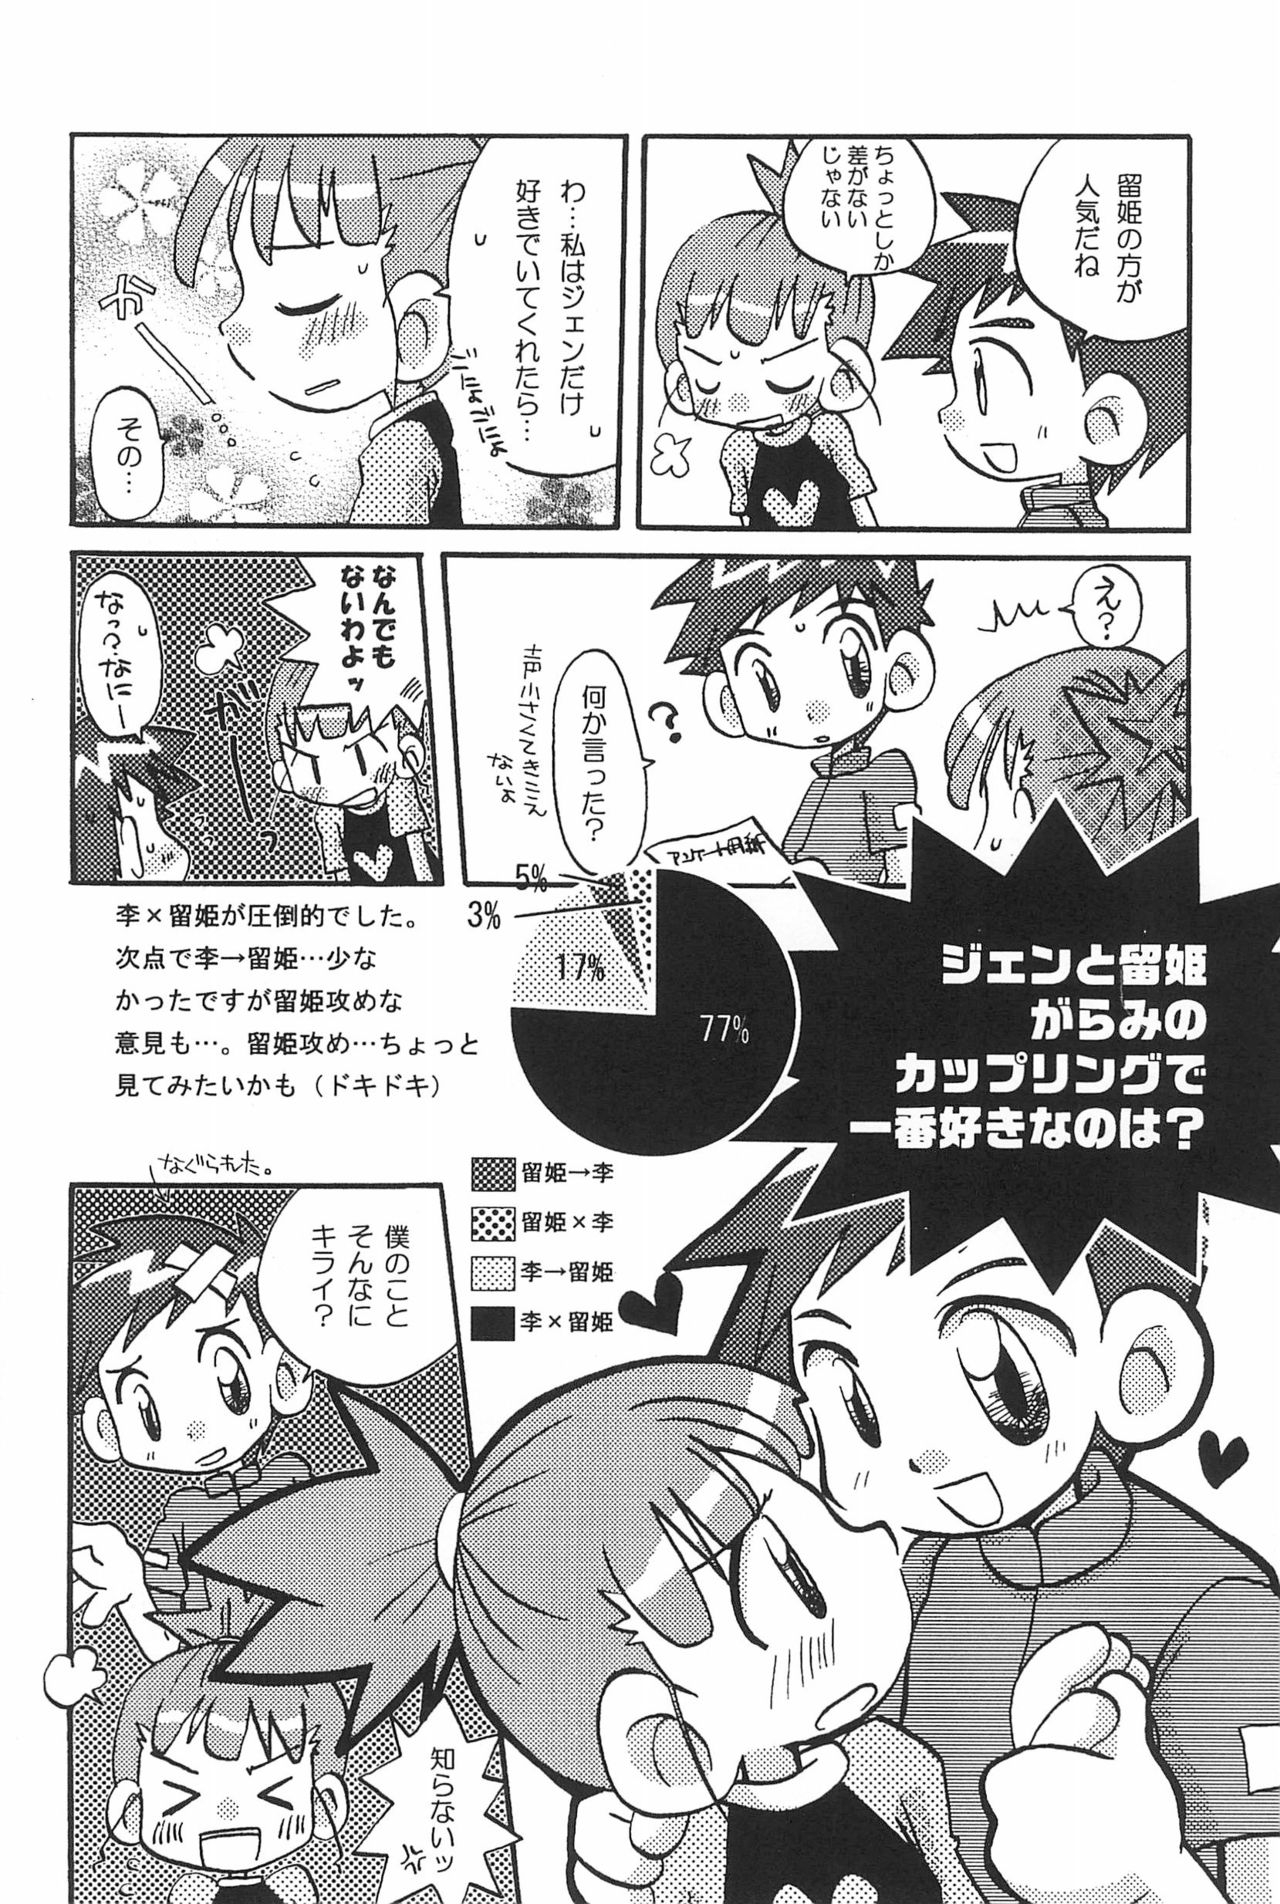 (SC15) [LeeRuki Anthology Jikkou Iinkai (Various)] LeeRuki Anthology J&R REPORT (Digimon Tamers) 41